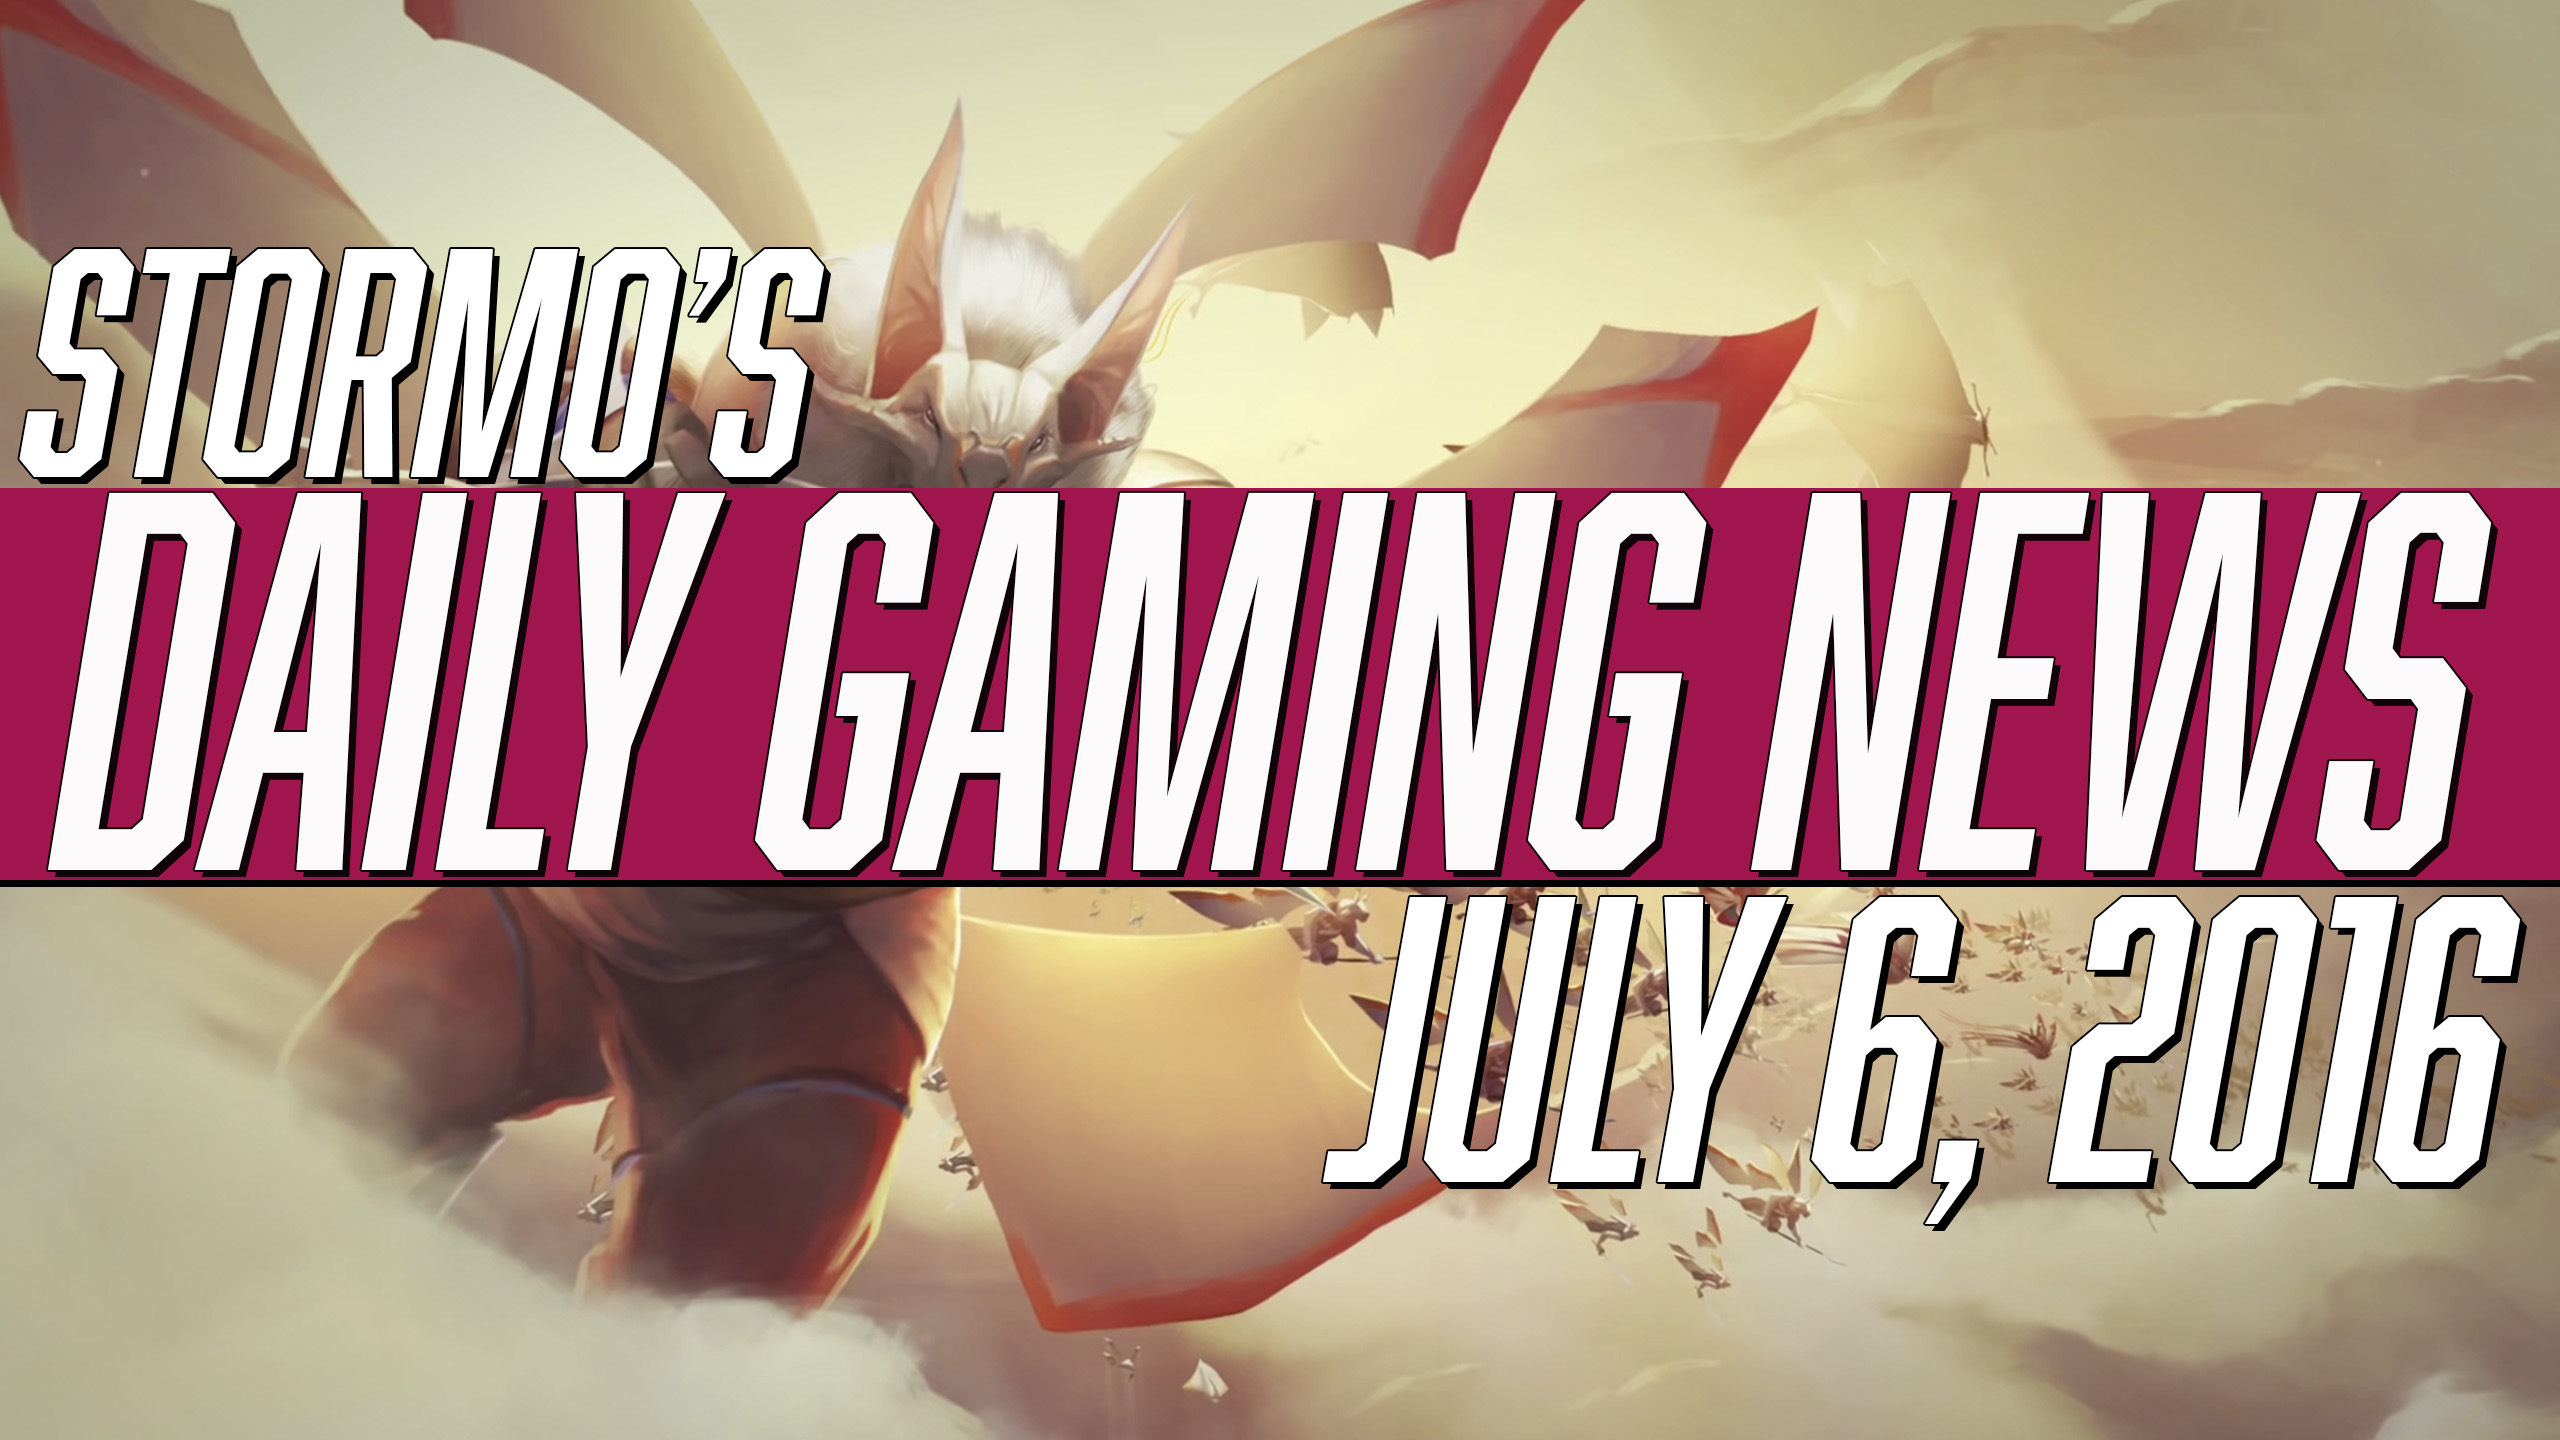 Daily Gaming News - July 6, 2016